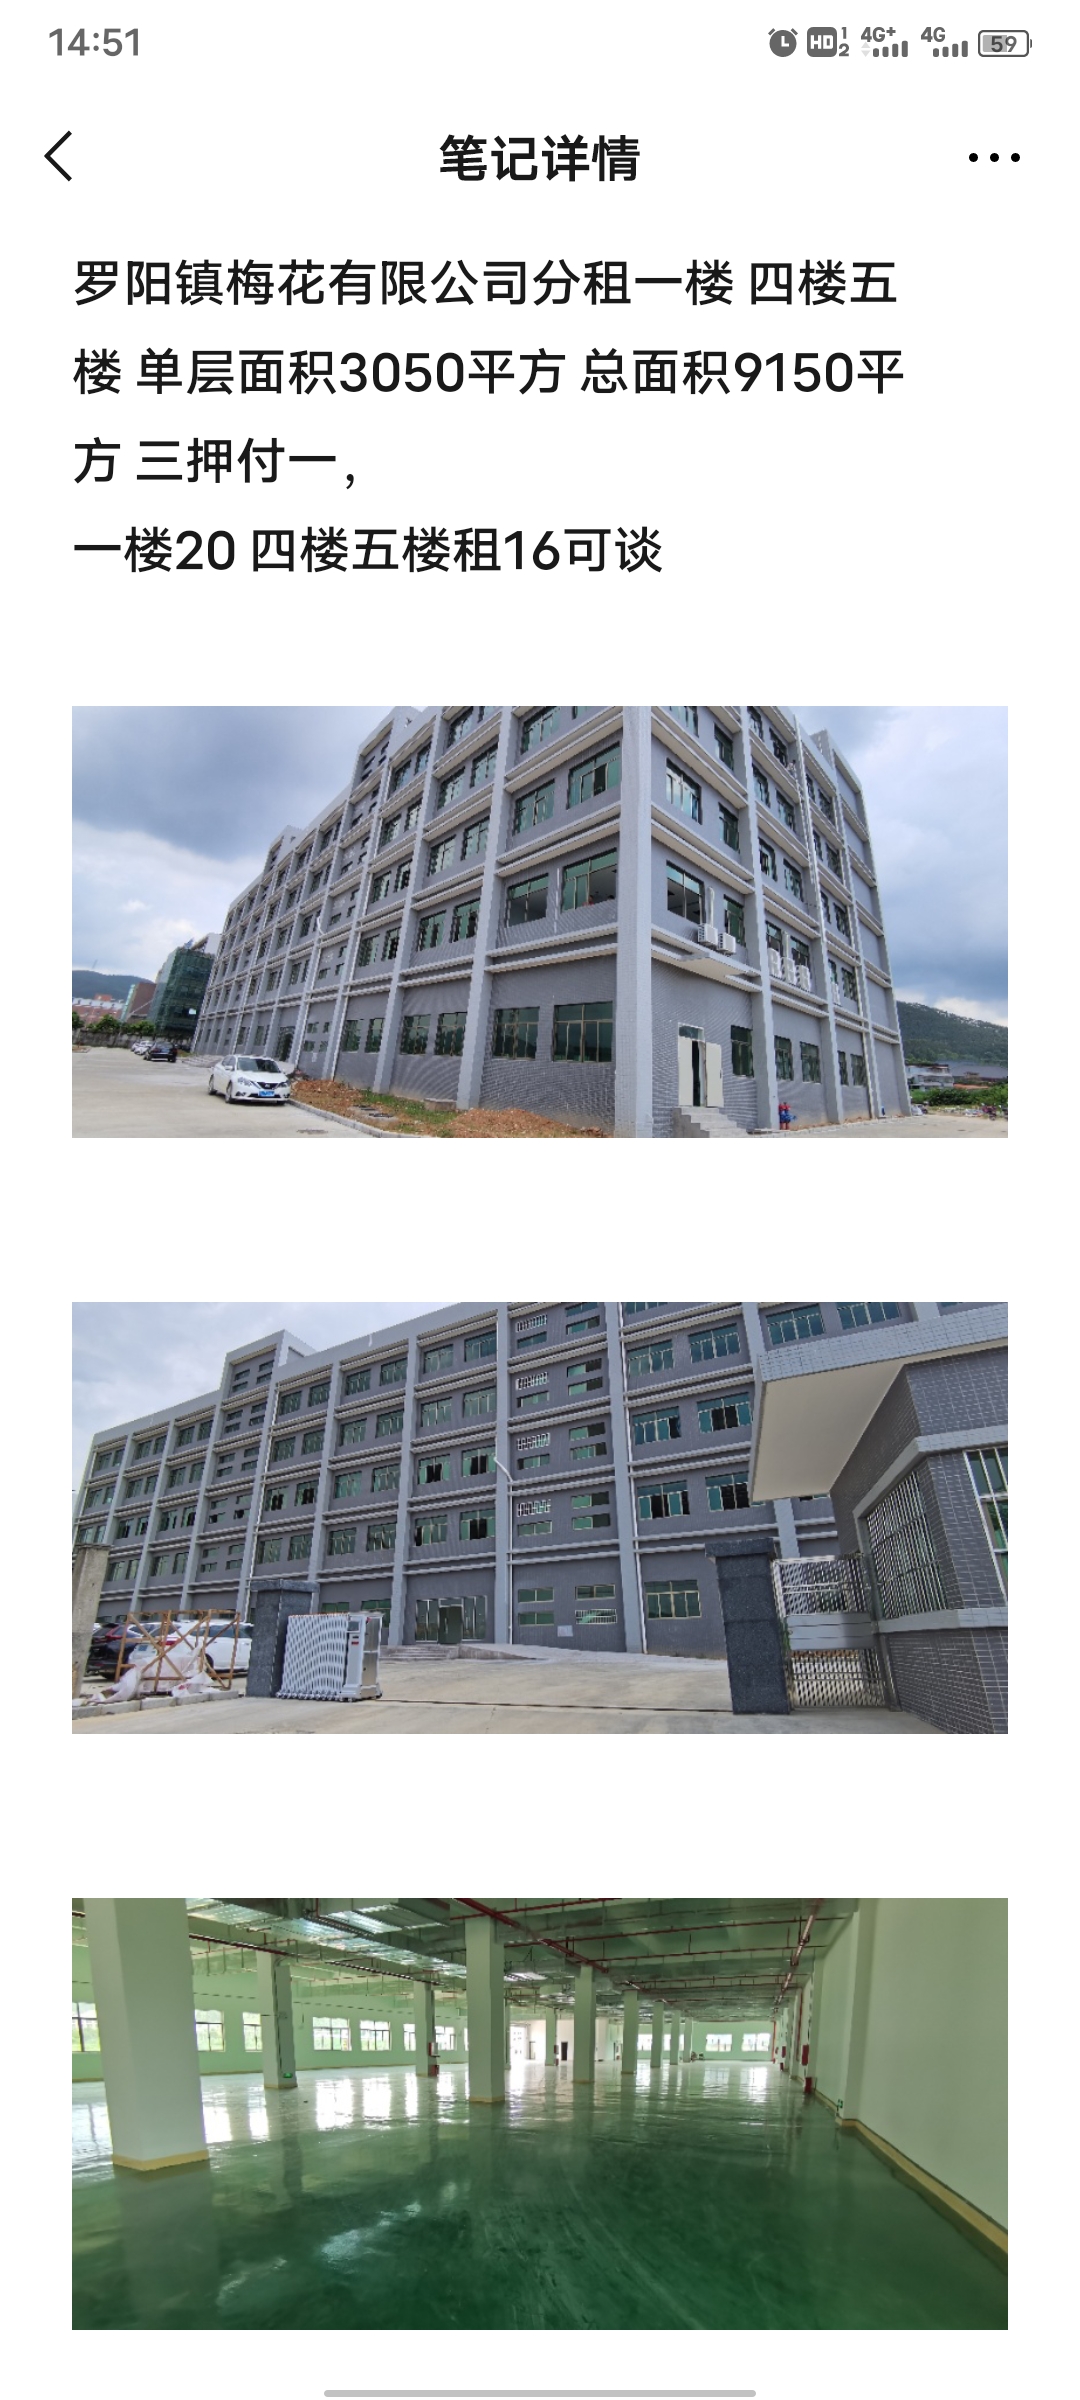 惠州新圩标准厂房仓库招租500平米可分租整栋10000平米